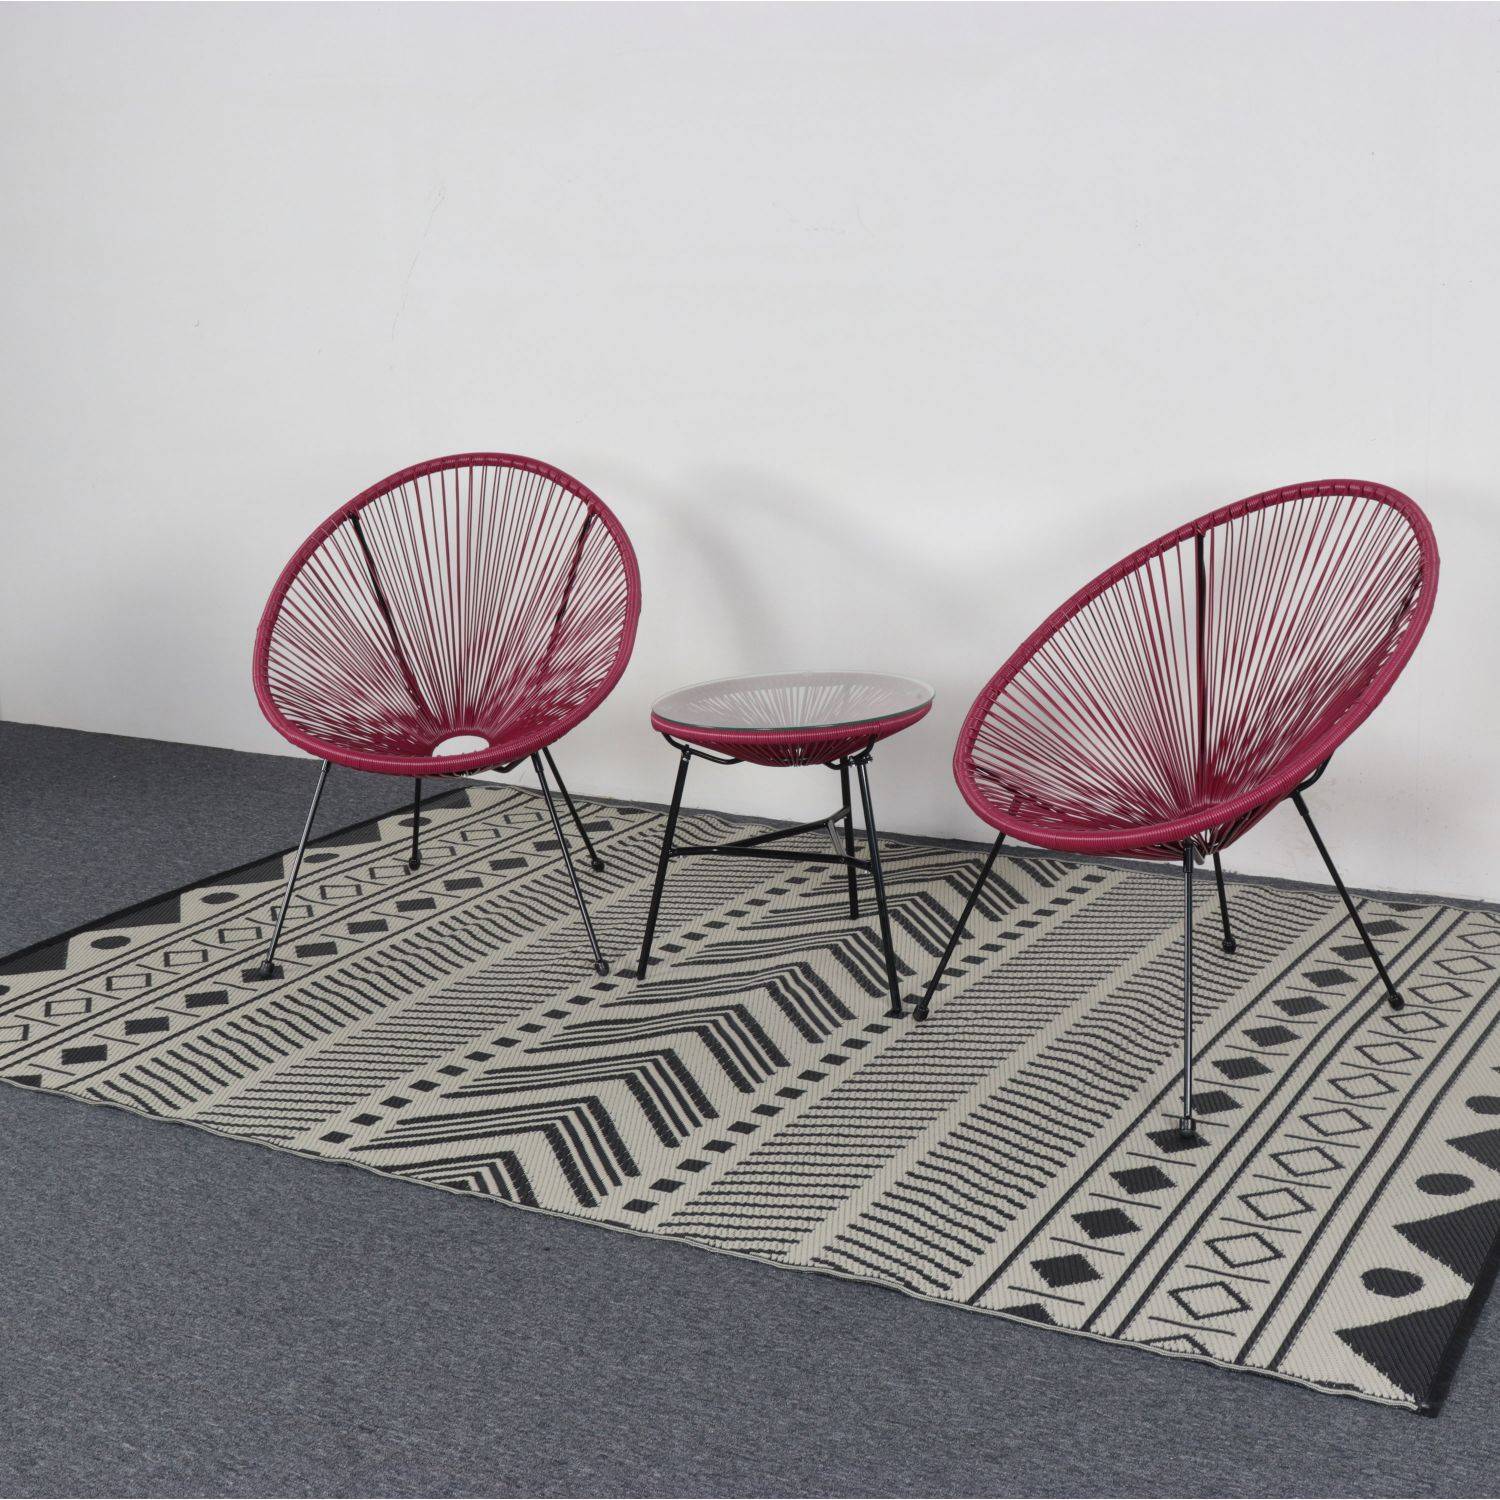 Outdoor rug - 180x270cm - Jacquard, reversible, rectangular, indoor/outdoor use - Bamako - Black-beige Photo4